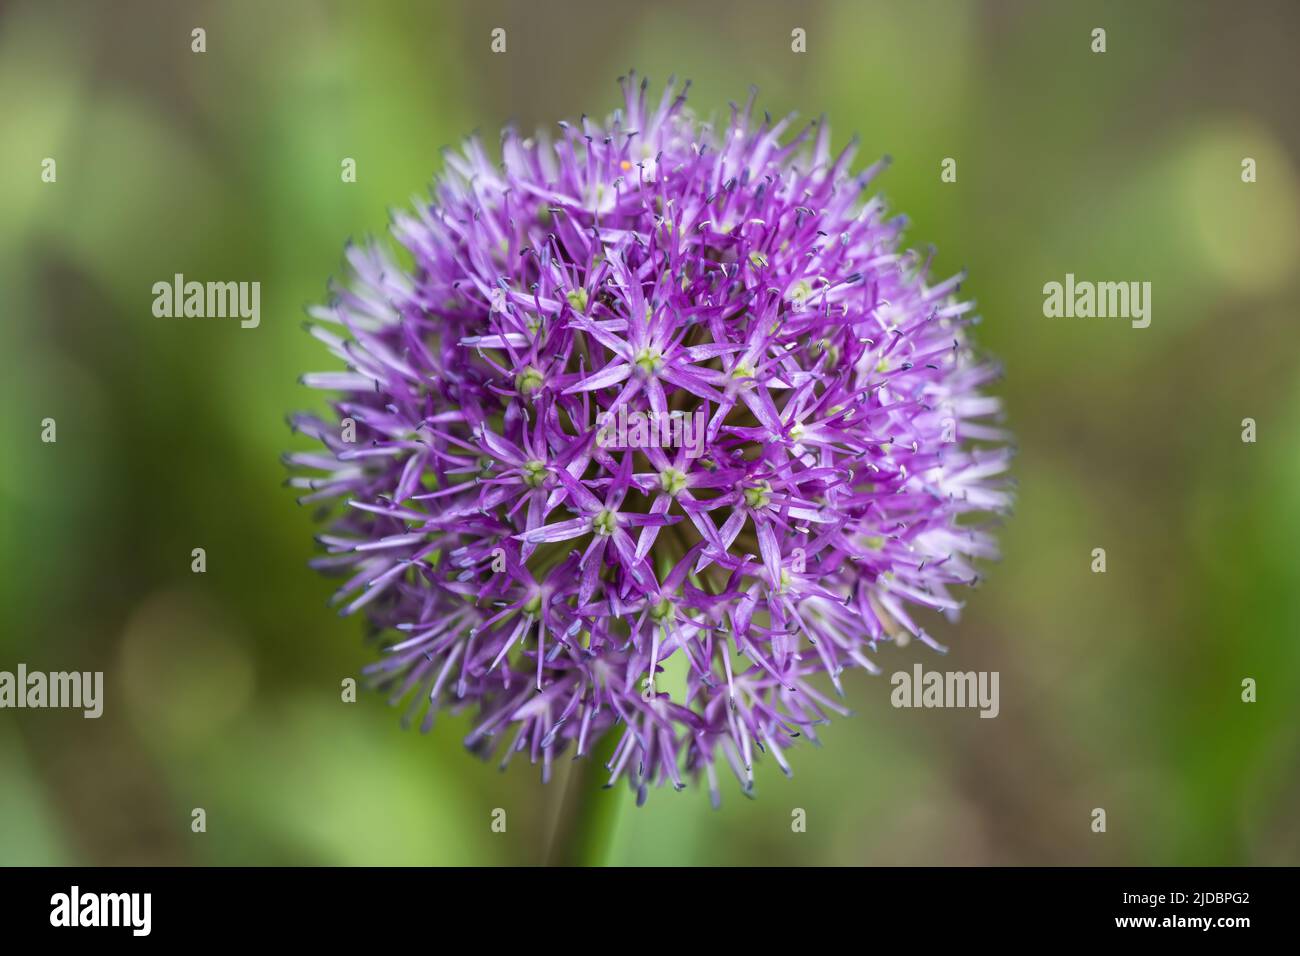 Persian shallot blooming flower, Allium stipitatum Regel, medical plant in the family Amaryllidaceae, genus Allium, native range: Central Asia. Stock Photo